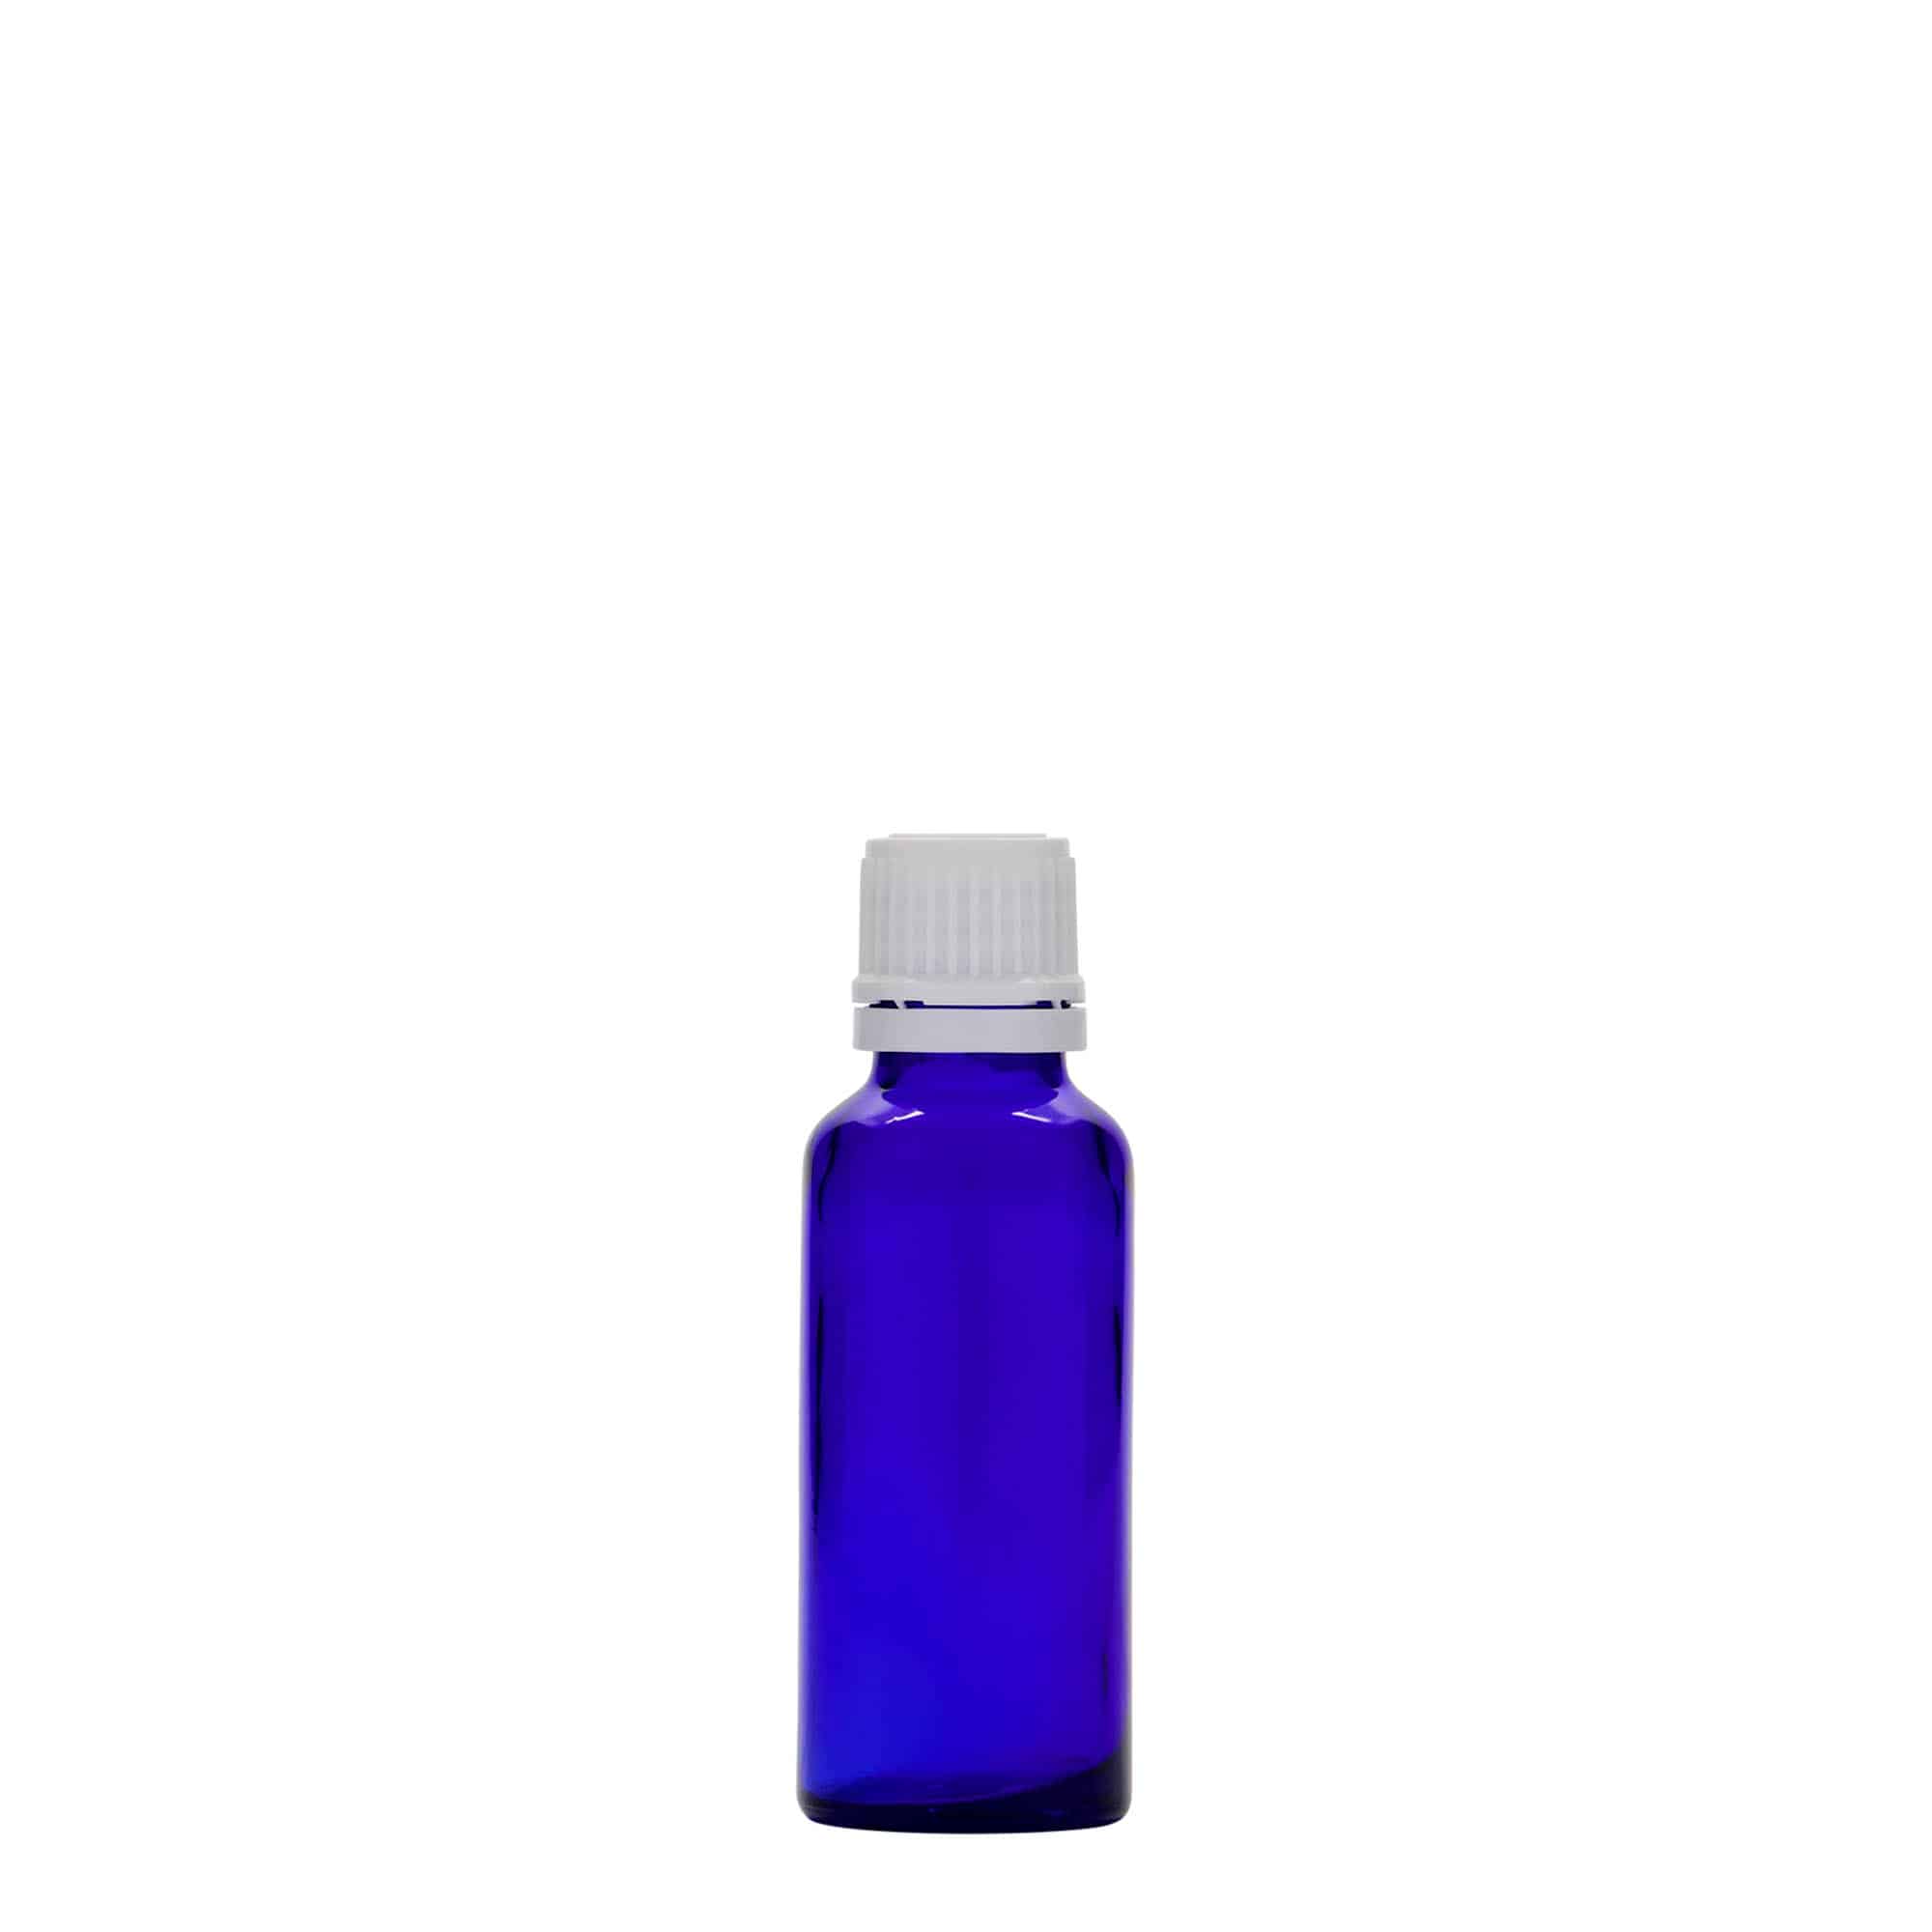 30 ml medicine bottle, glass, royal blue, closure: DIN 18